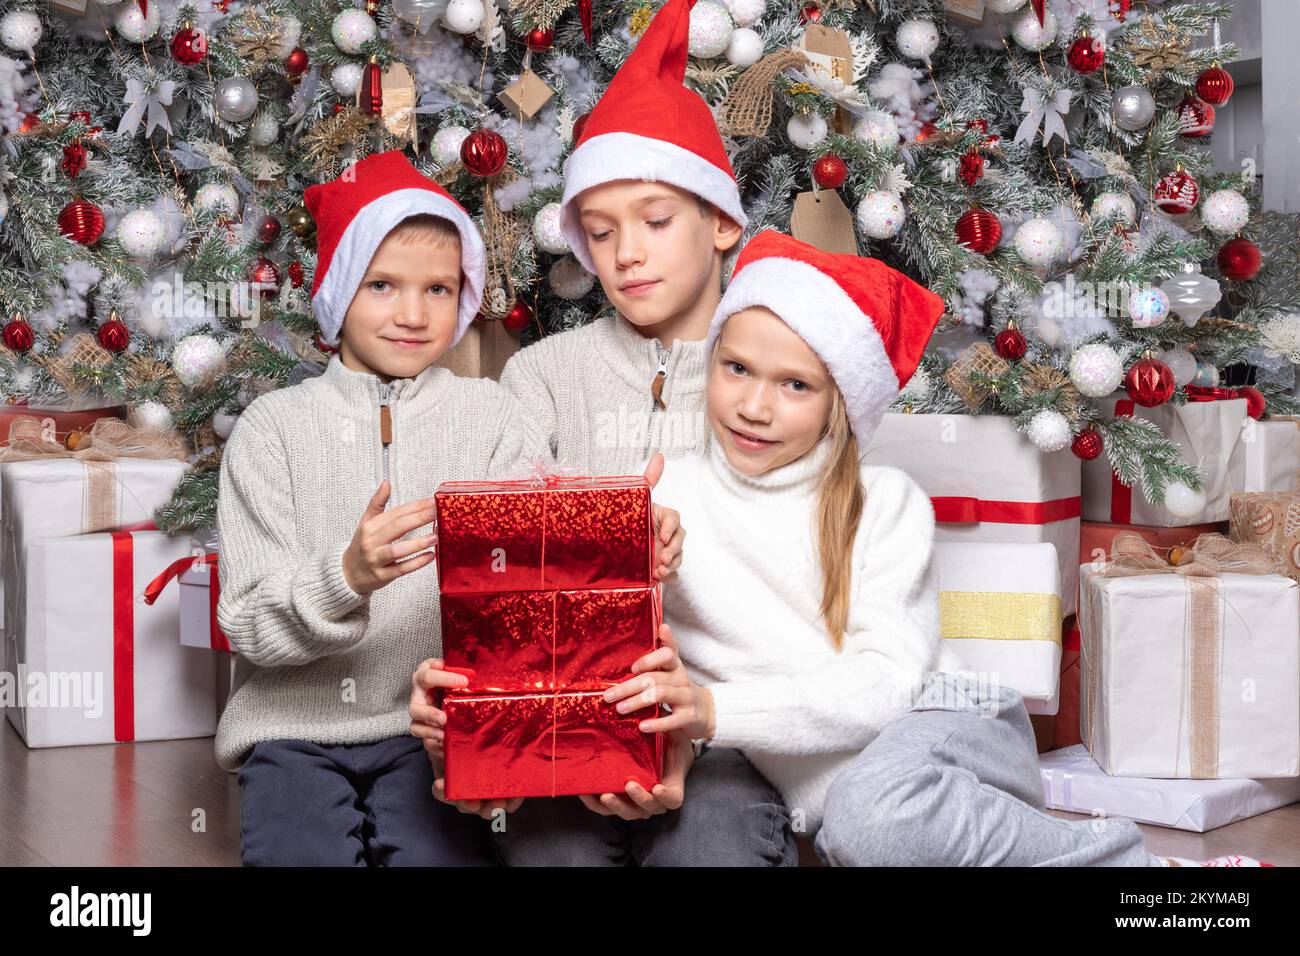 Drei süße, fröhliche, aufgeregte Kinder, Jungen und ein Mädchen mit weihnachtsmannmützen tauschen zu Hause Überraschungsgeschenke neben dem weihnachtsbaum aus. Schwester und Brüder geben Chri Stockfoto